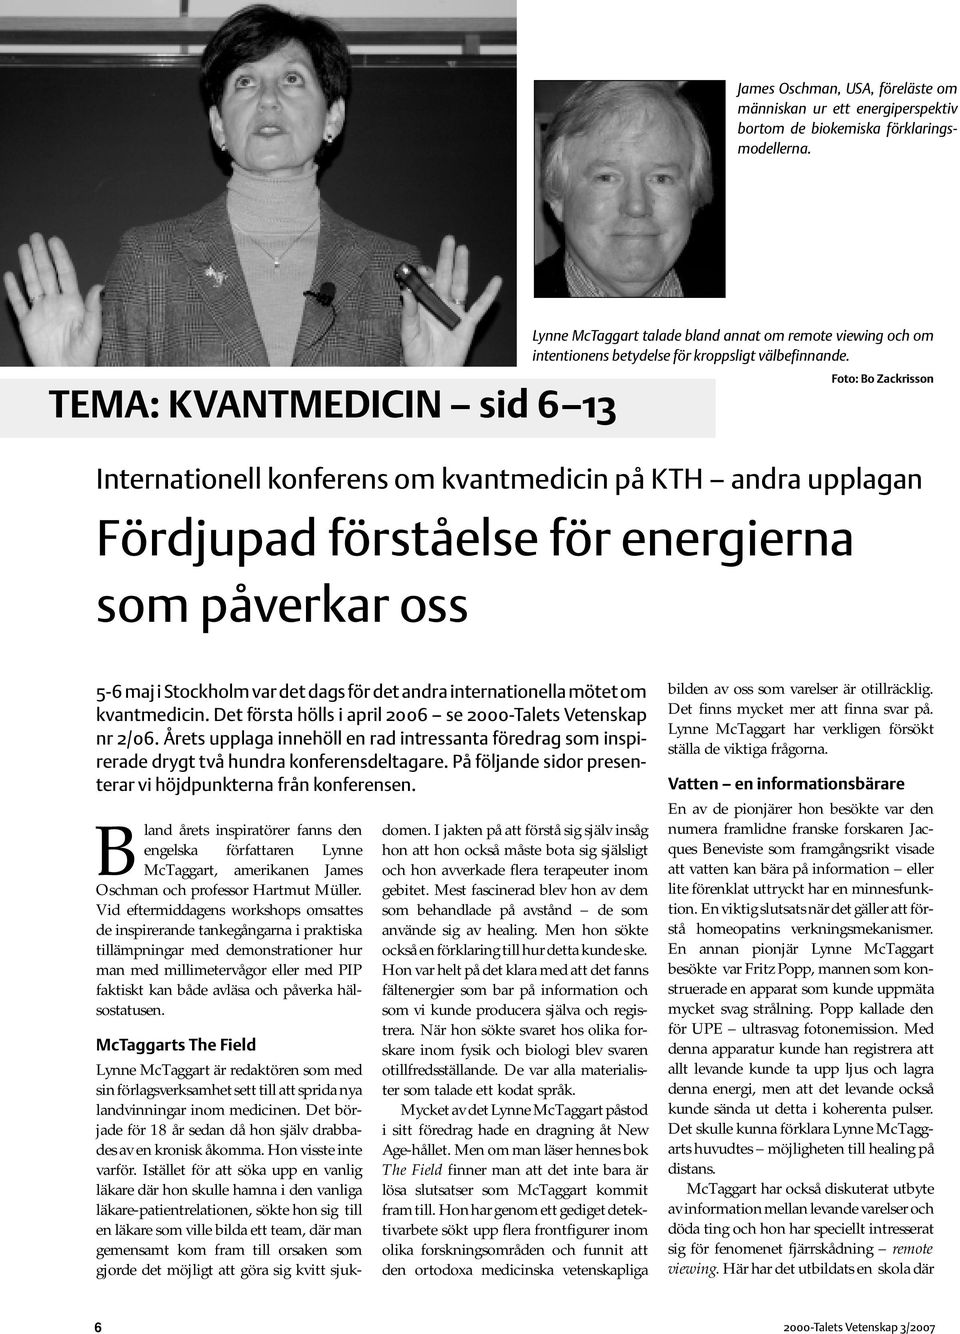 TEMA: KVANTMEDICIN sid 6 13 Foto: Bo Zackrisson Internationell konferens om kvantmedicin på KTH andra upplagan Fördjupad förståelse för energierna som påverkar oss 5-6 maj i Stockholm var det dags